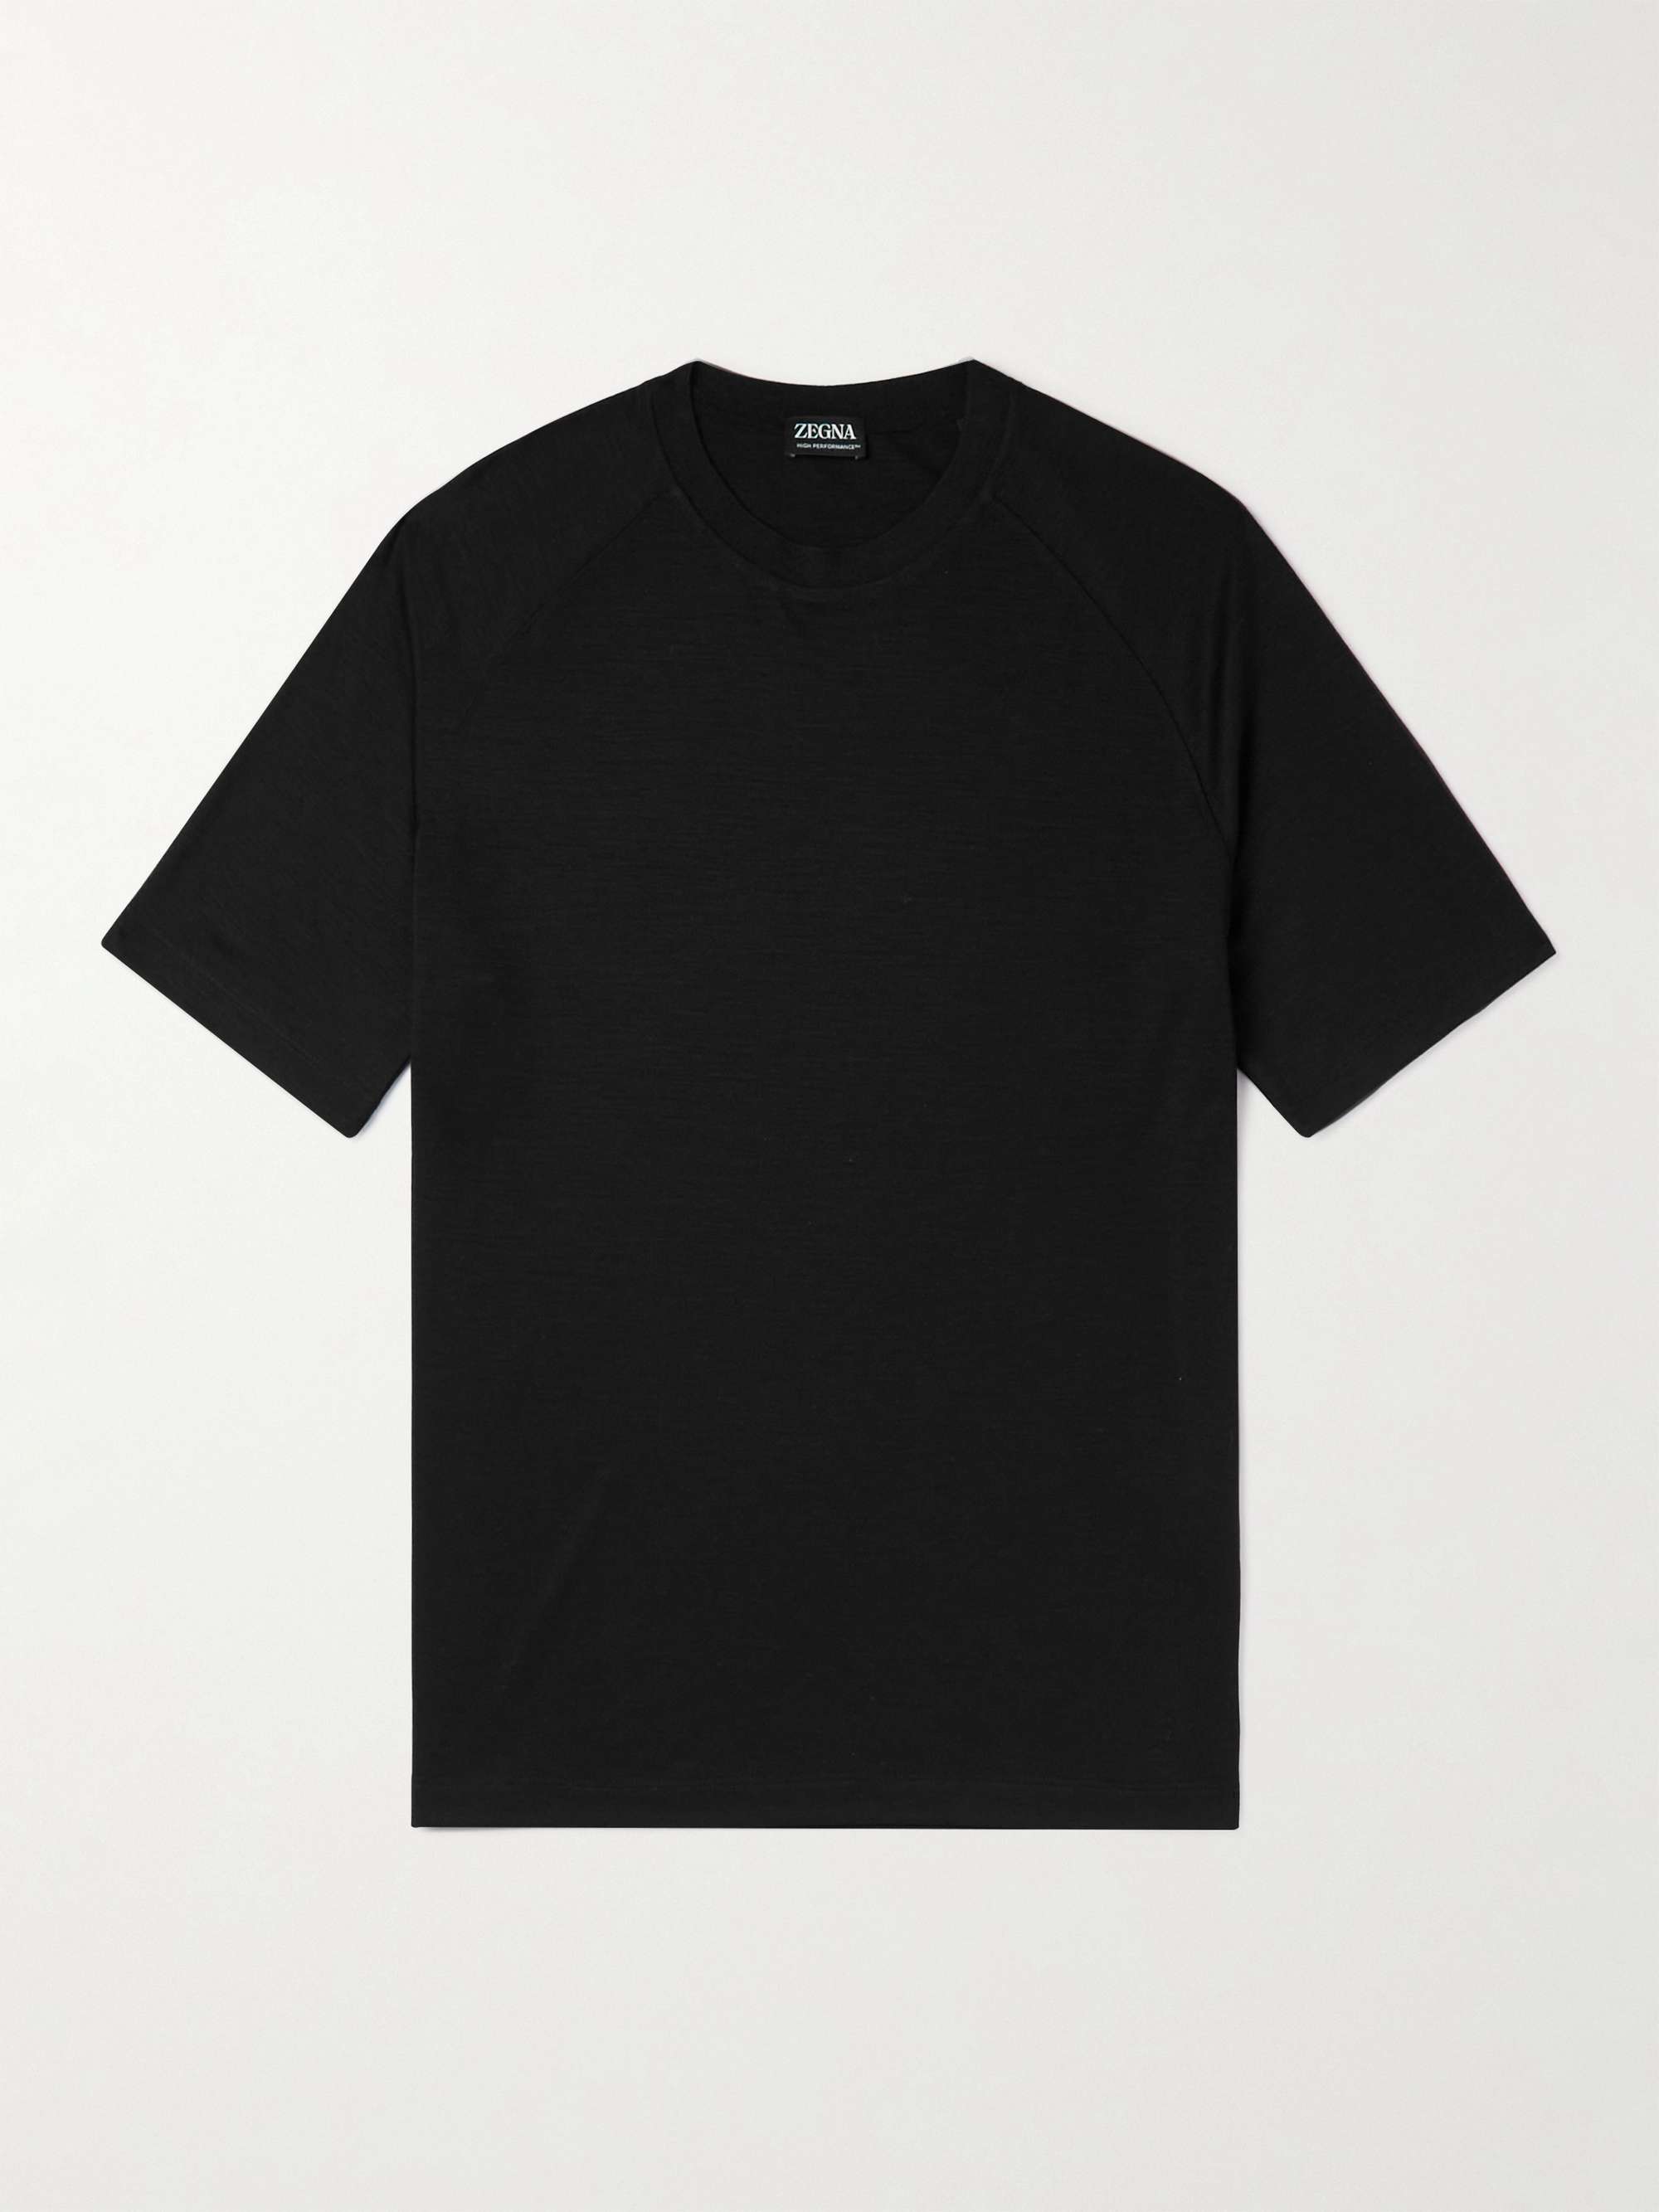 ZEGNA Wool T-Shirt for Men | MR PORTER